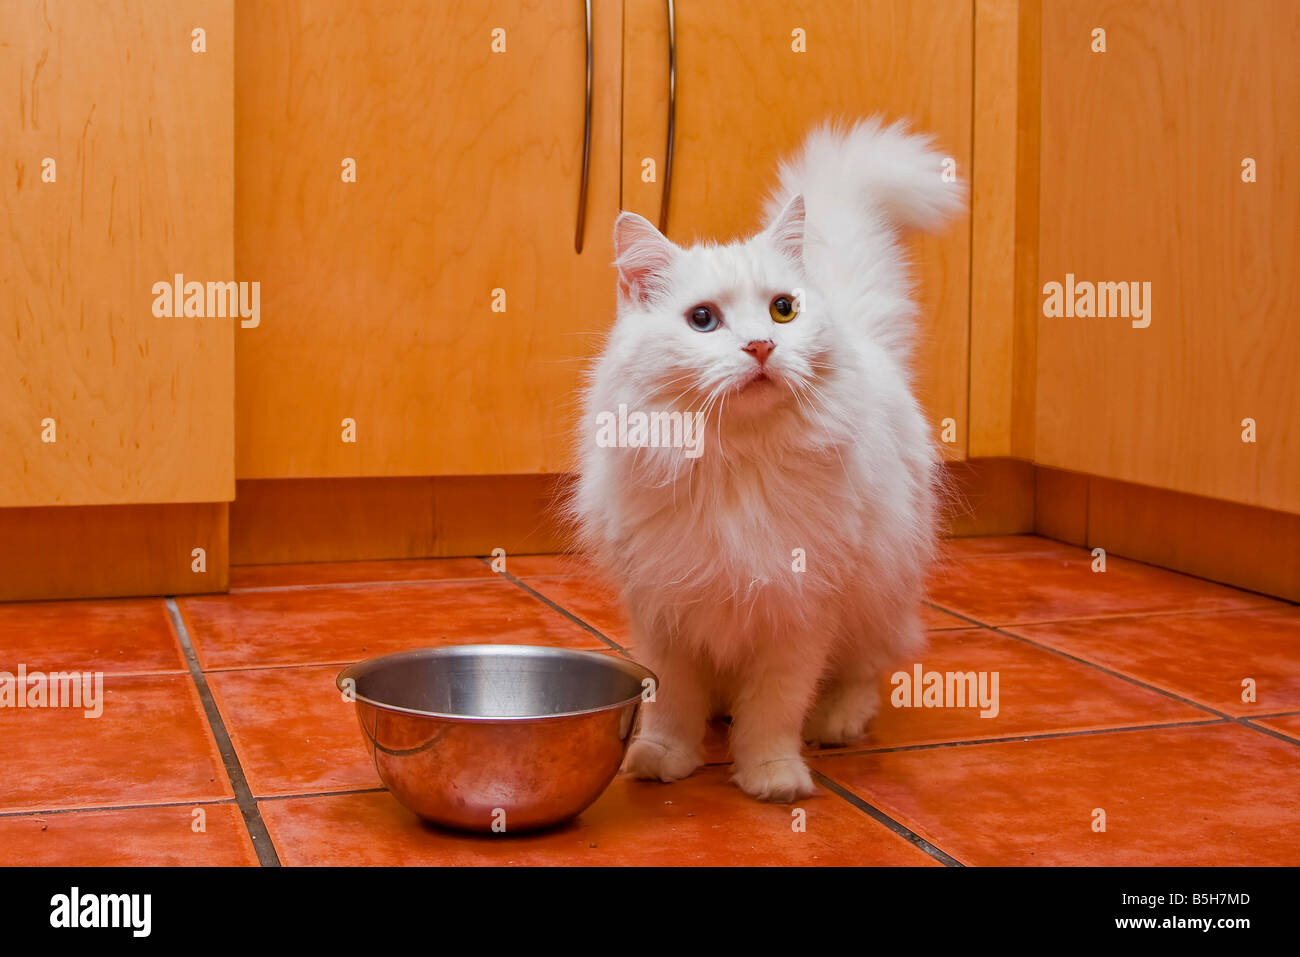 Un gatto bianco con medie capelli lunghi come un persiano o razza Ragamuffin elegantemente in attesa di essere alimentati in cucina Foto Stock